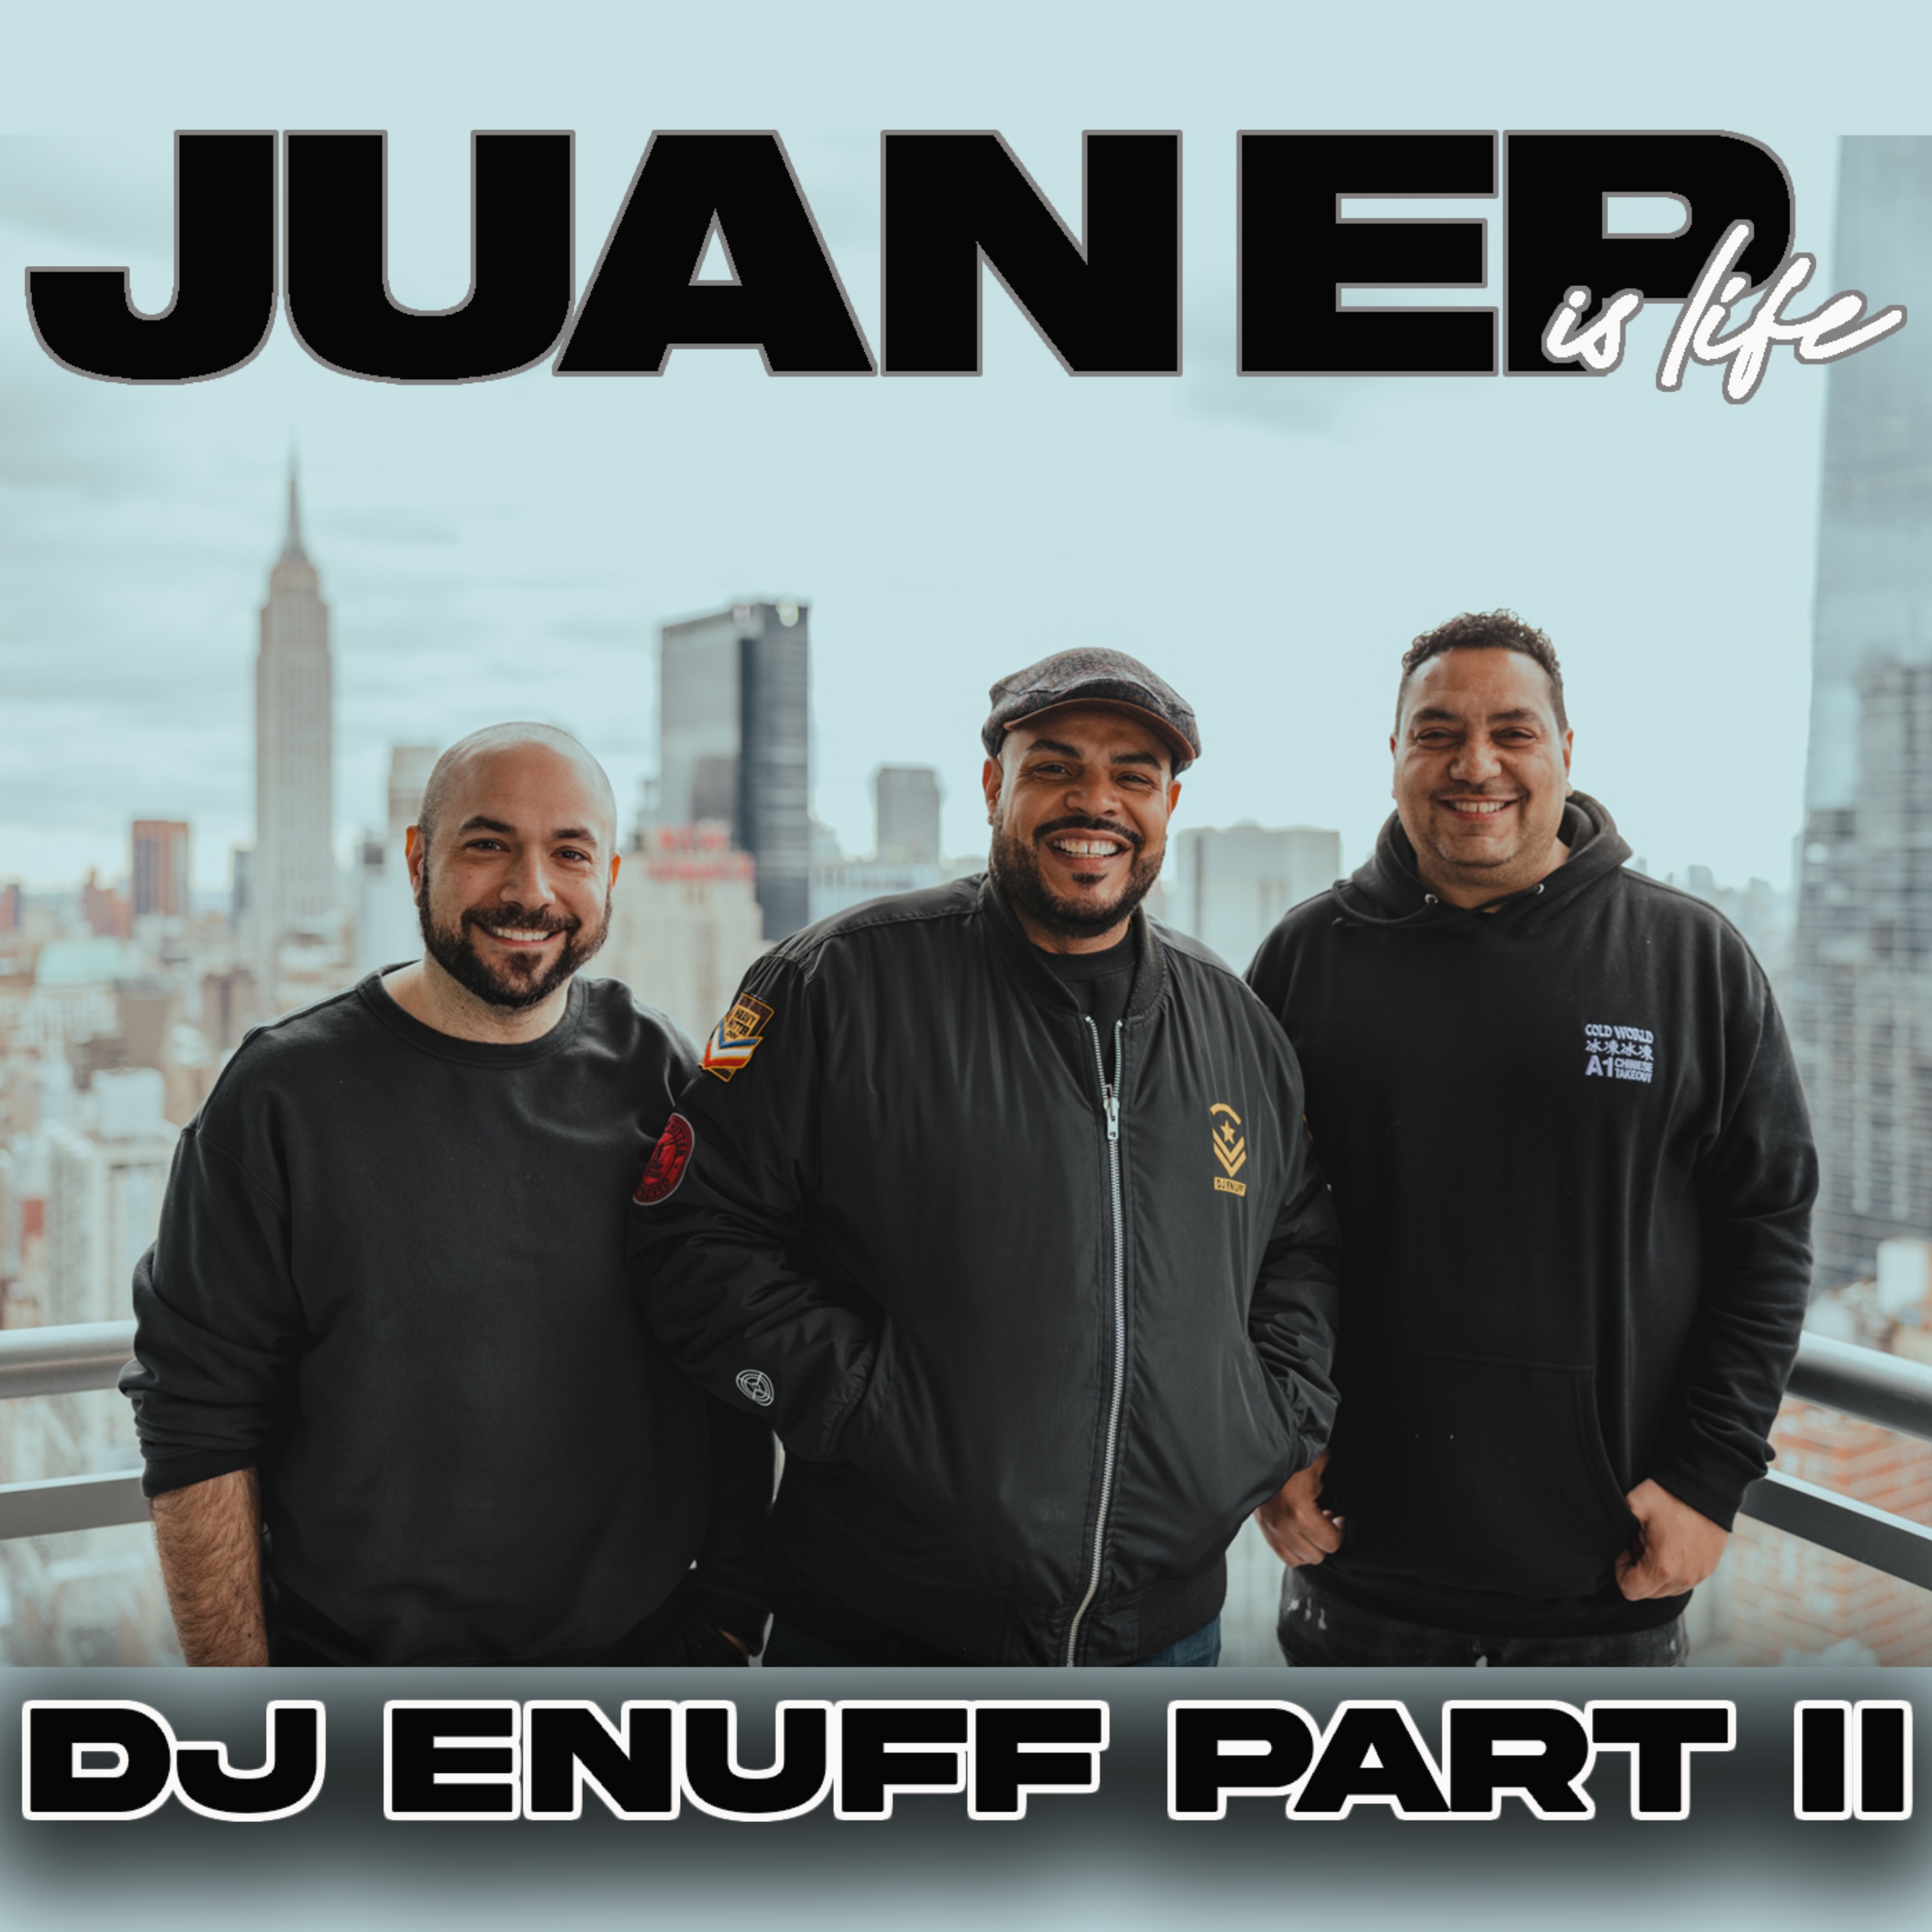 1/24/23: DJ Enuff Part II